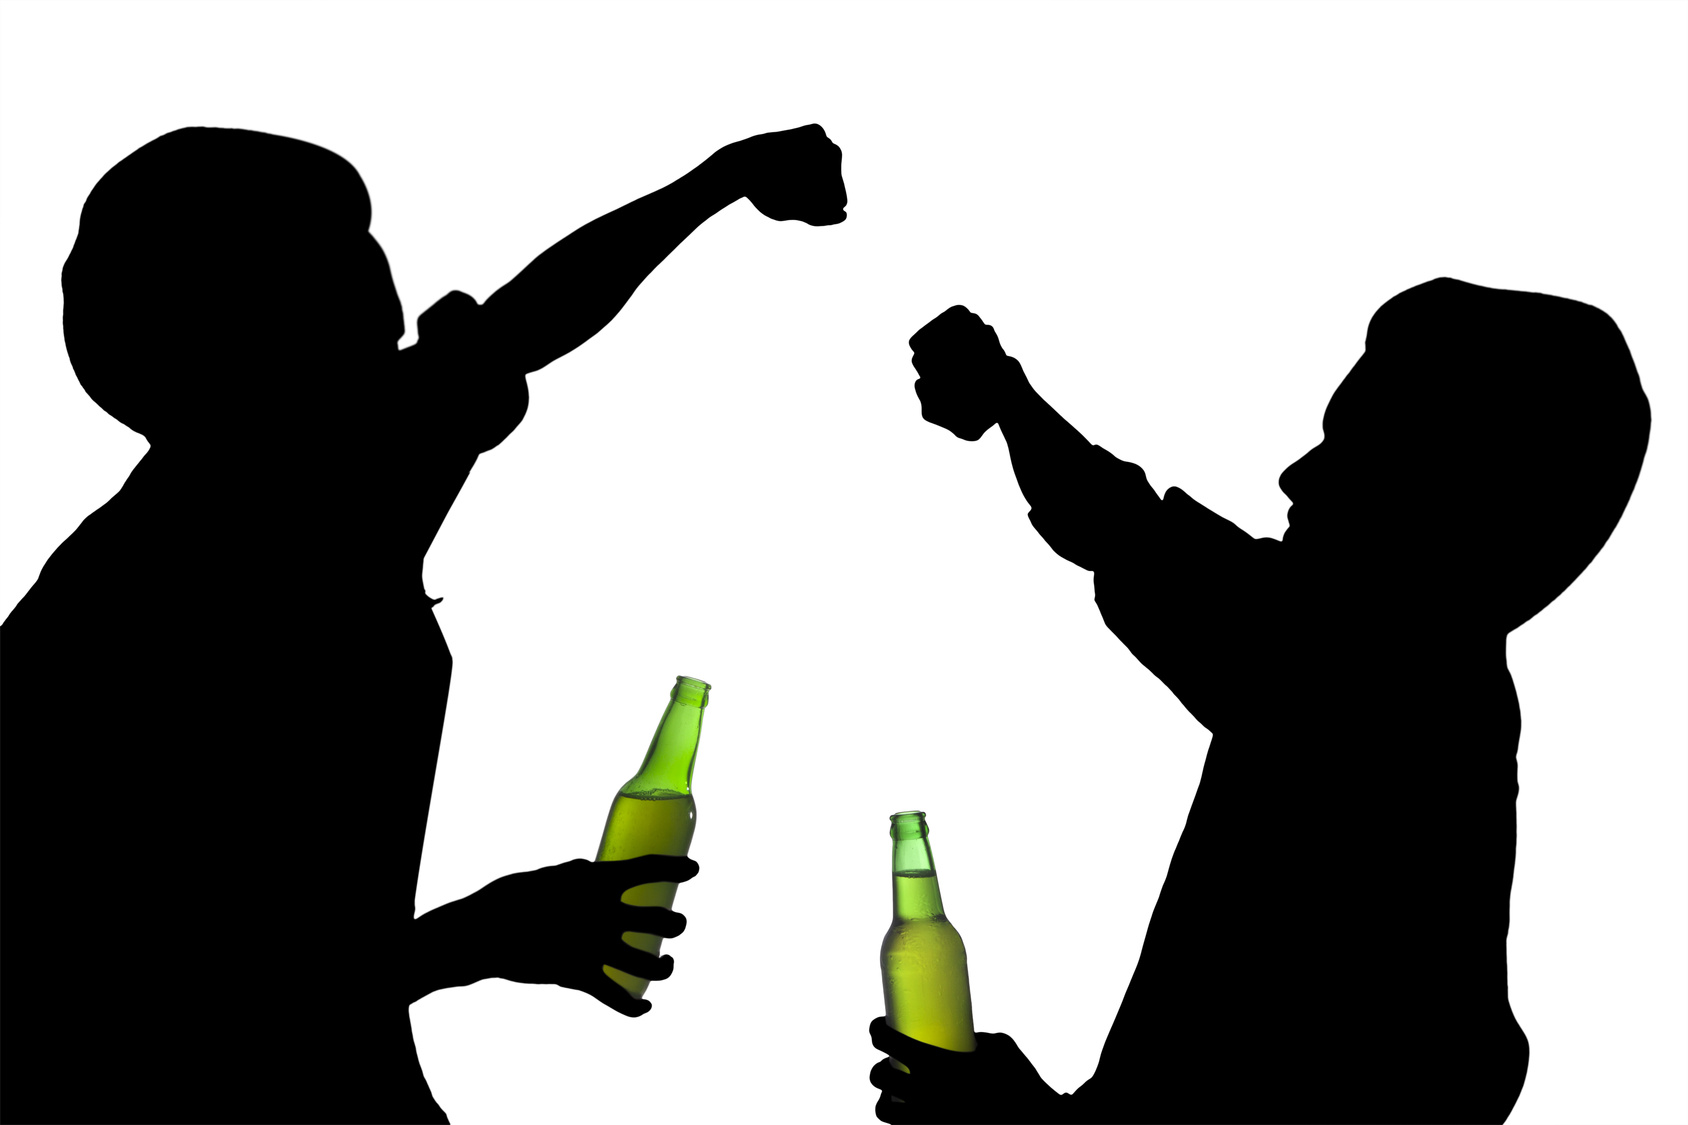 употребление спиртных напитков среди молодежи